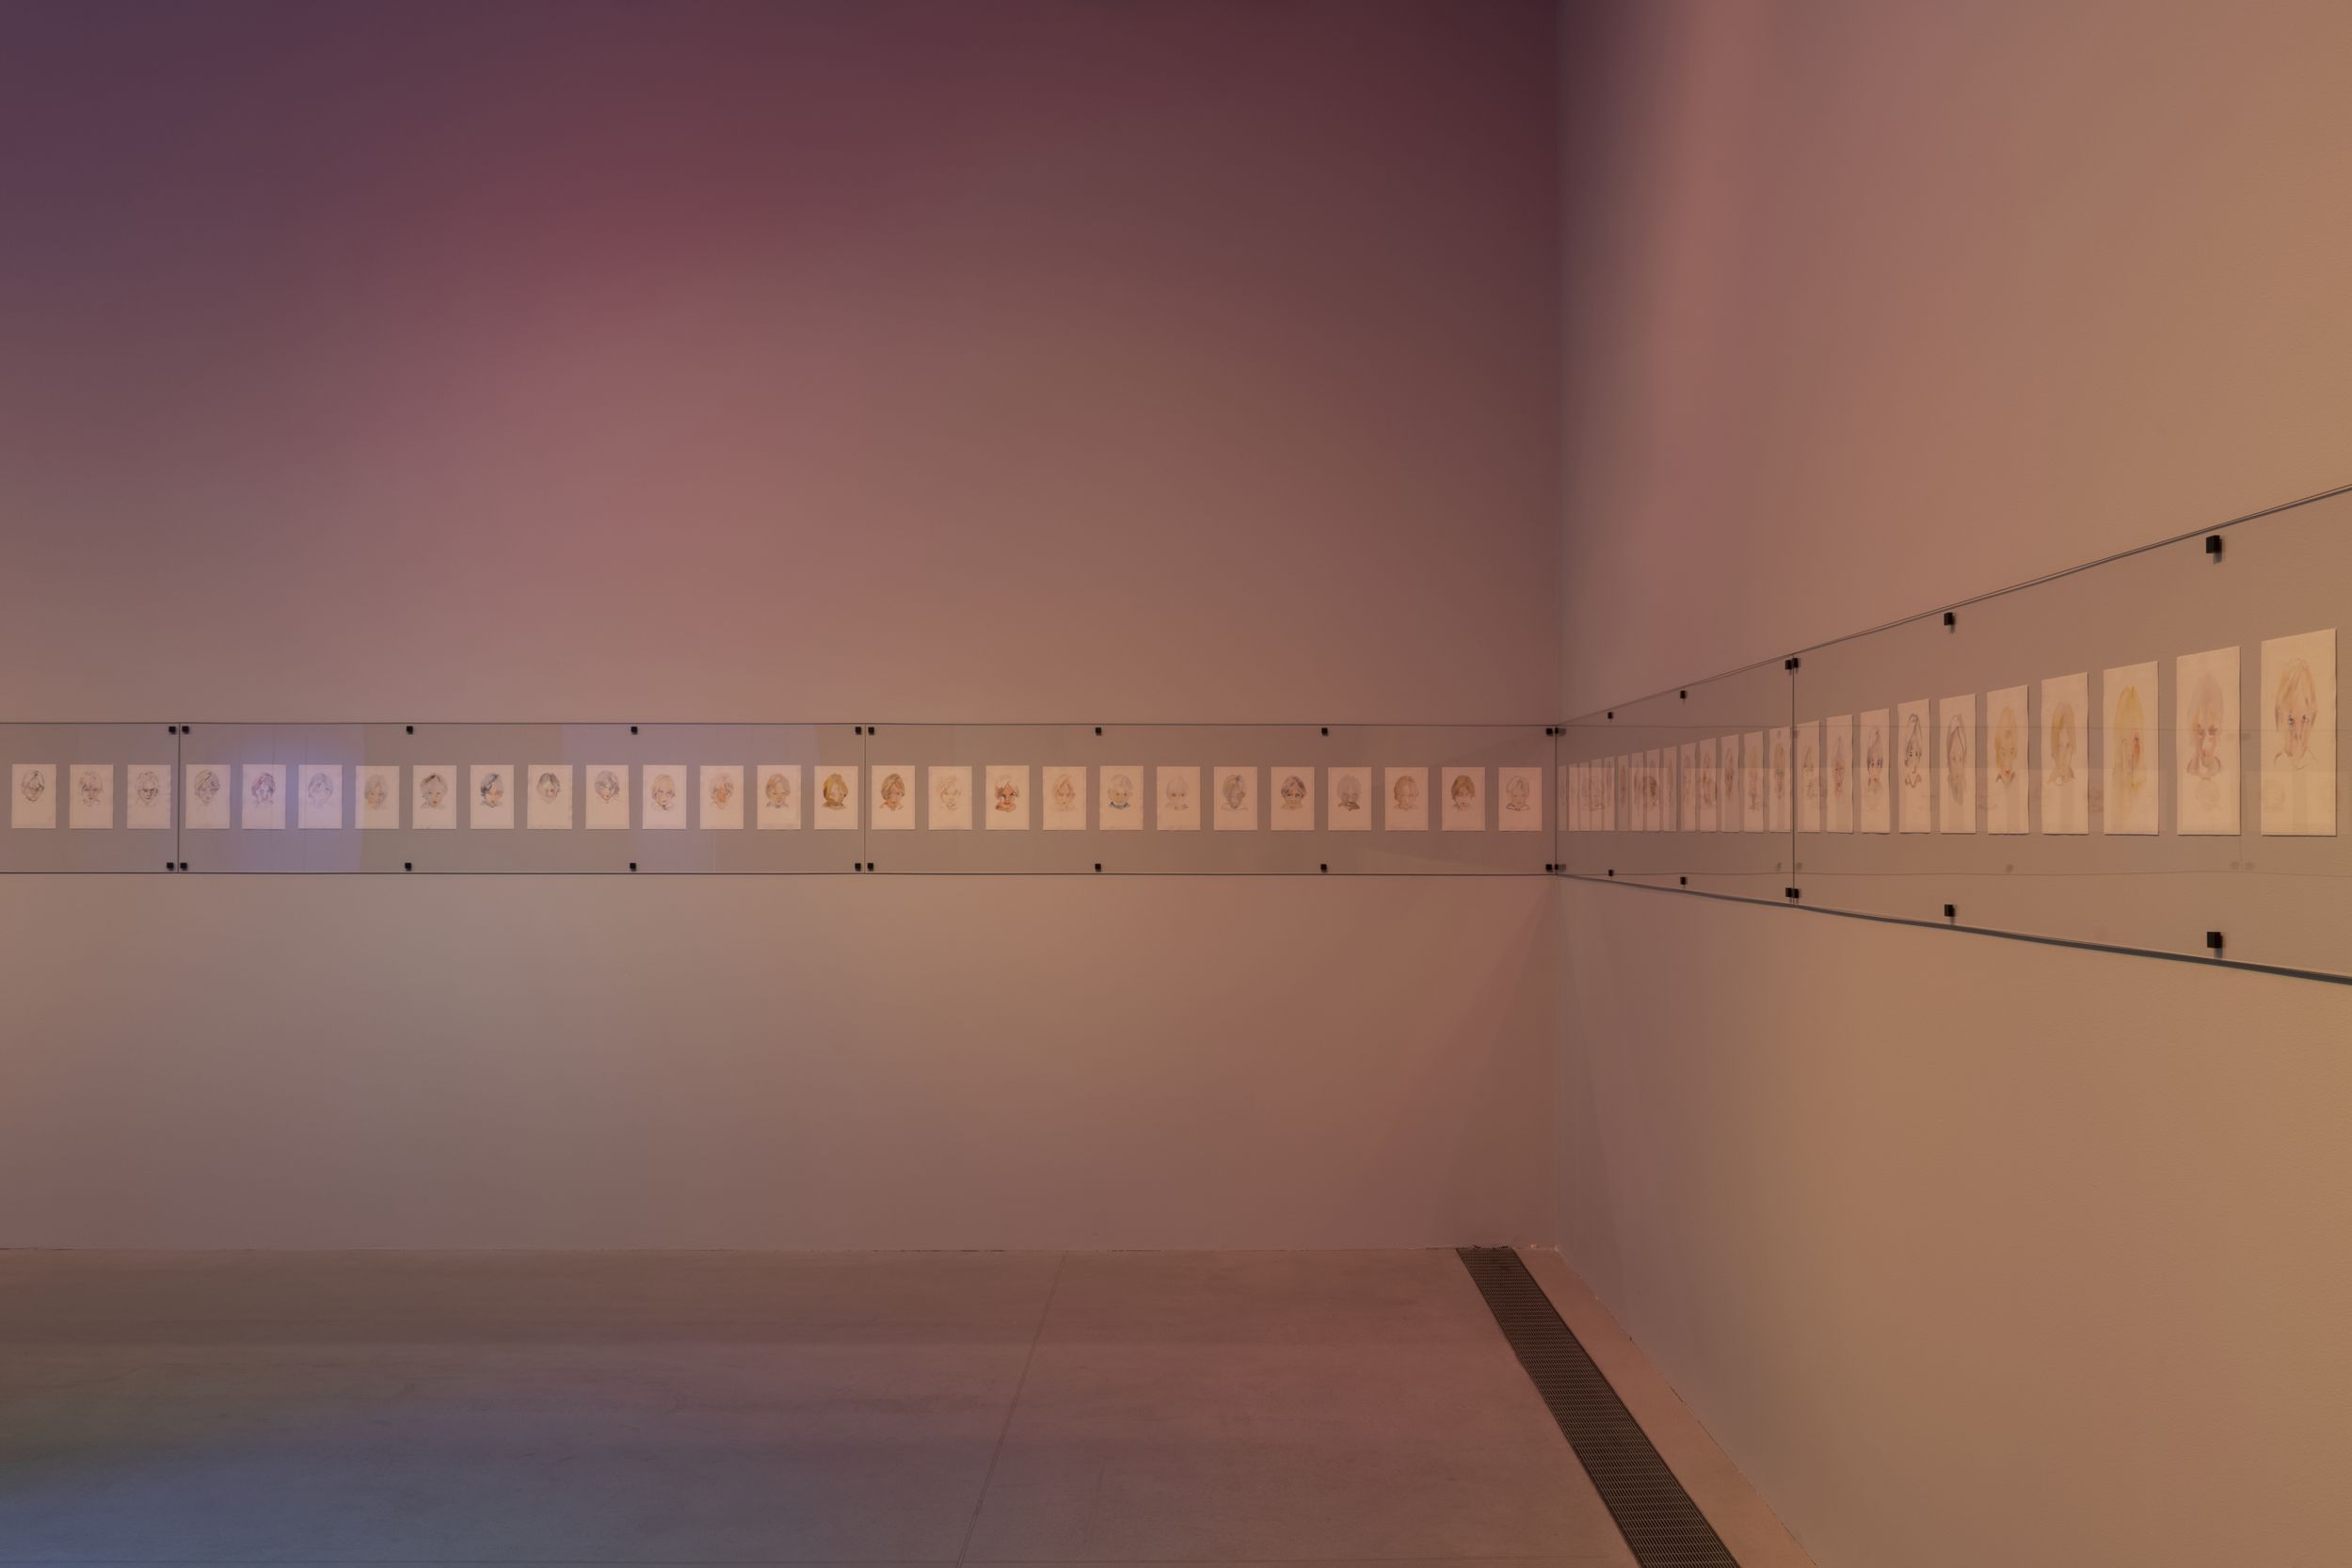 Фотография длинной серии рисунков, развешенных горизонтально по двум стенам под стеклом